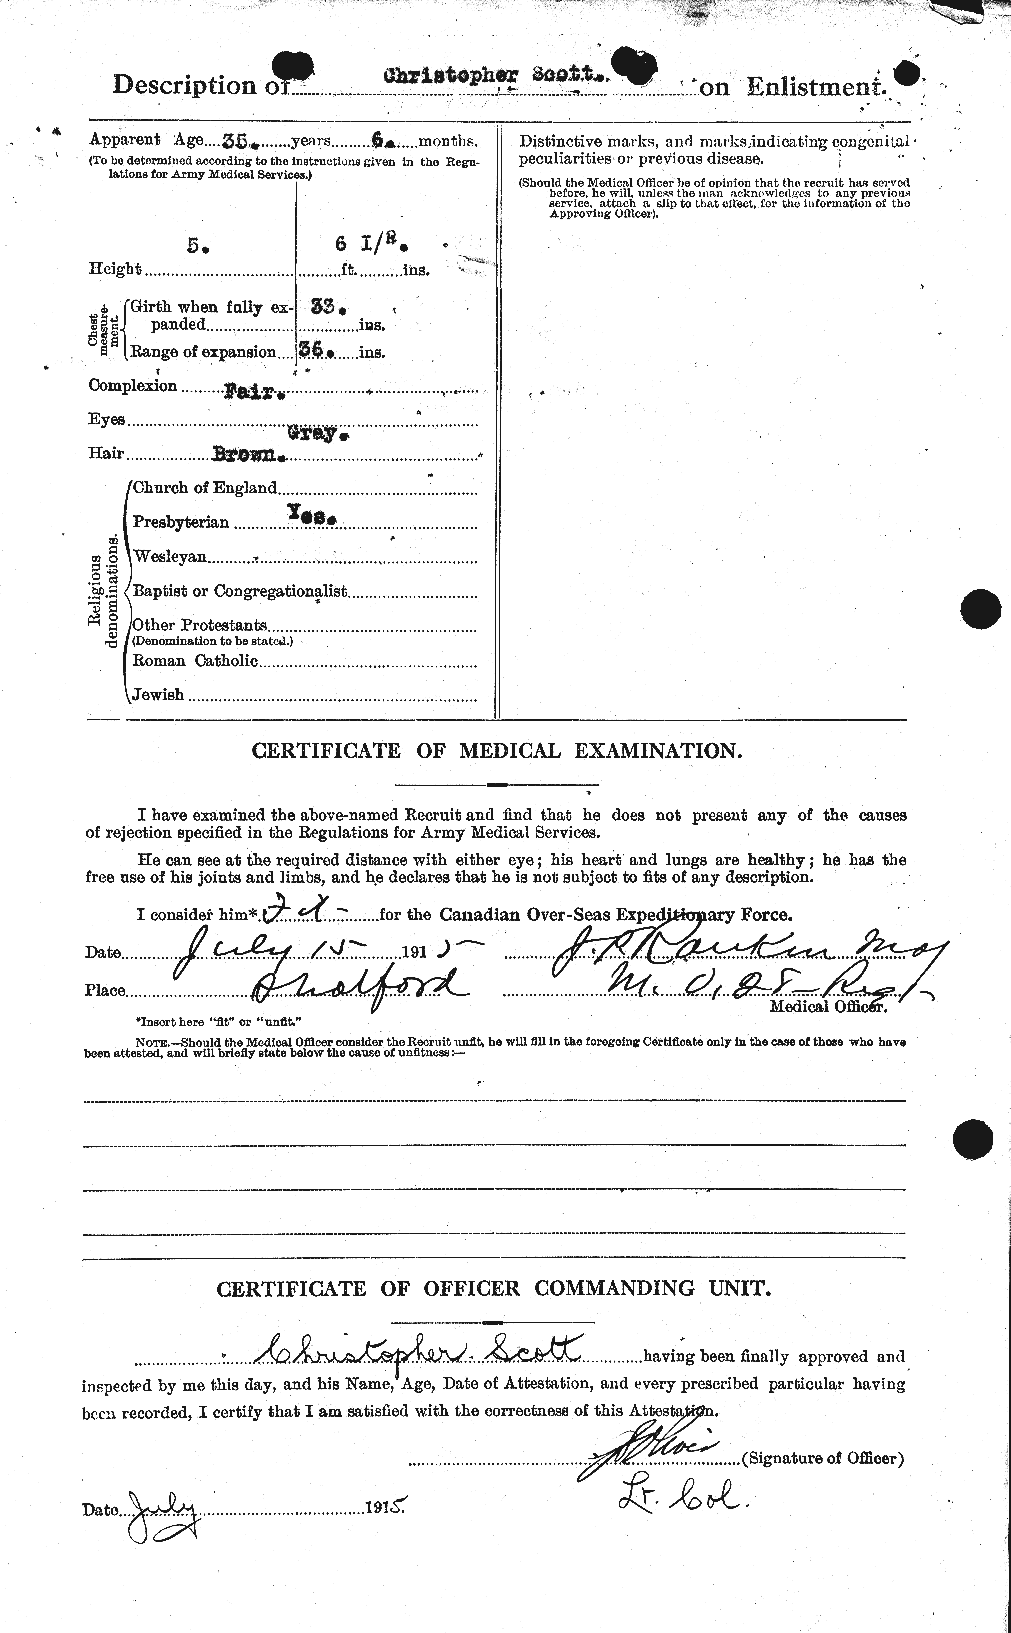 Dossiers du Personnel de la Première Guerre mondiale - CEC 085865b